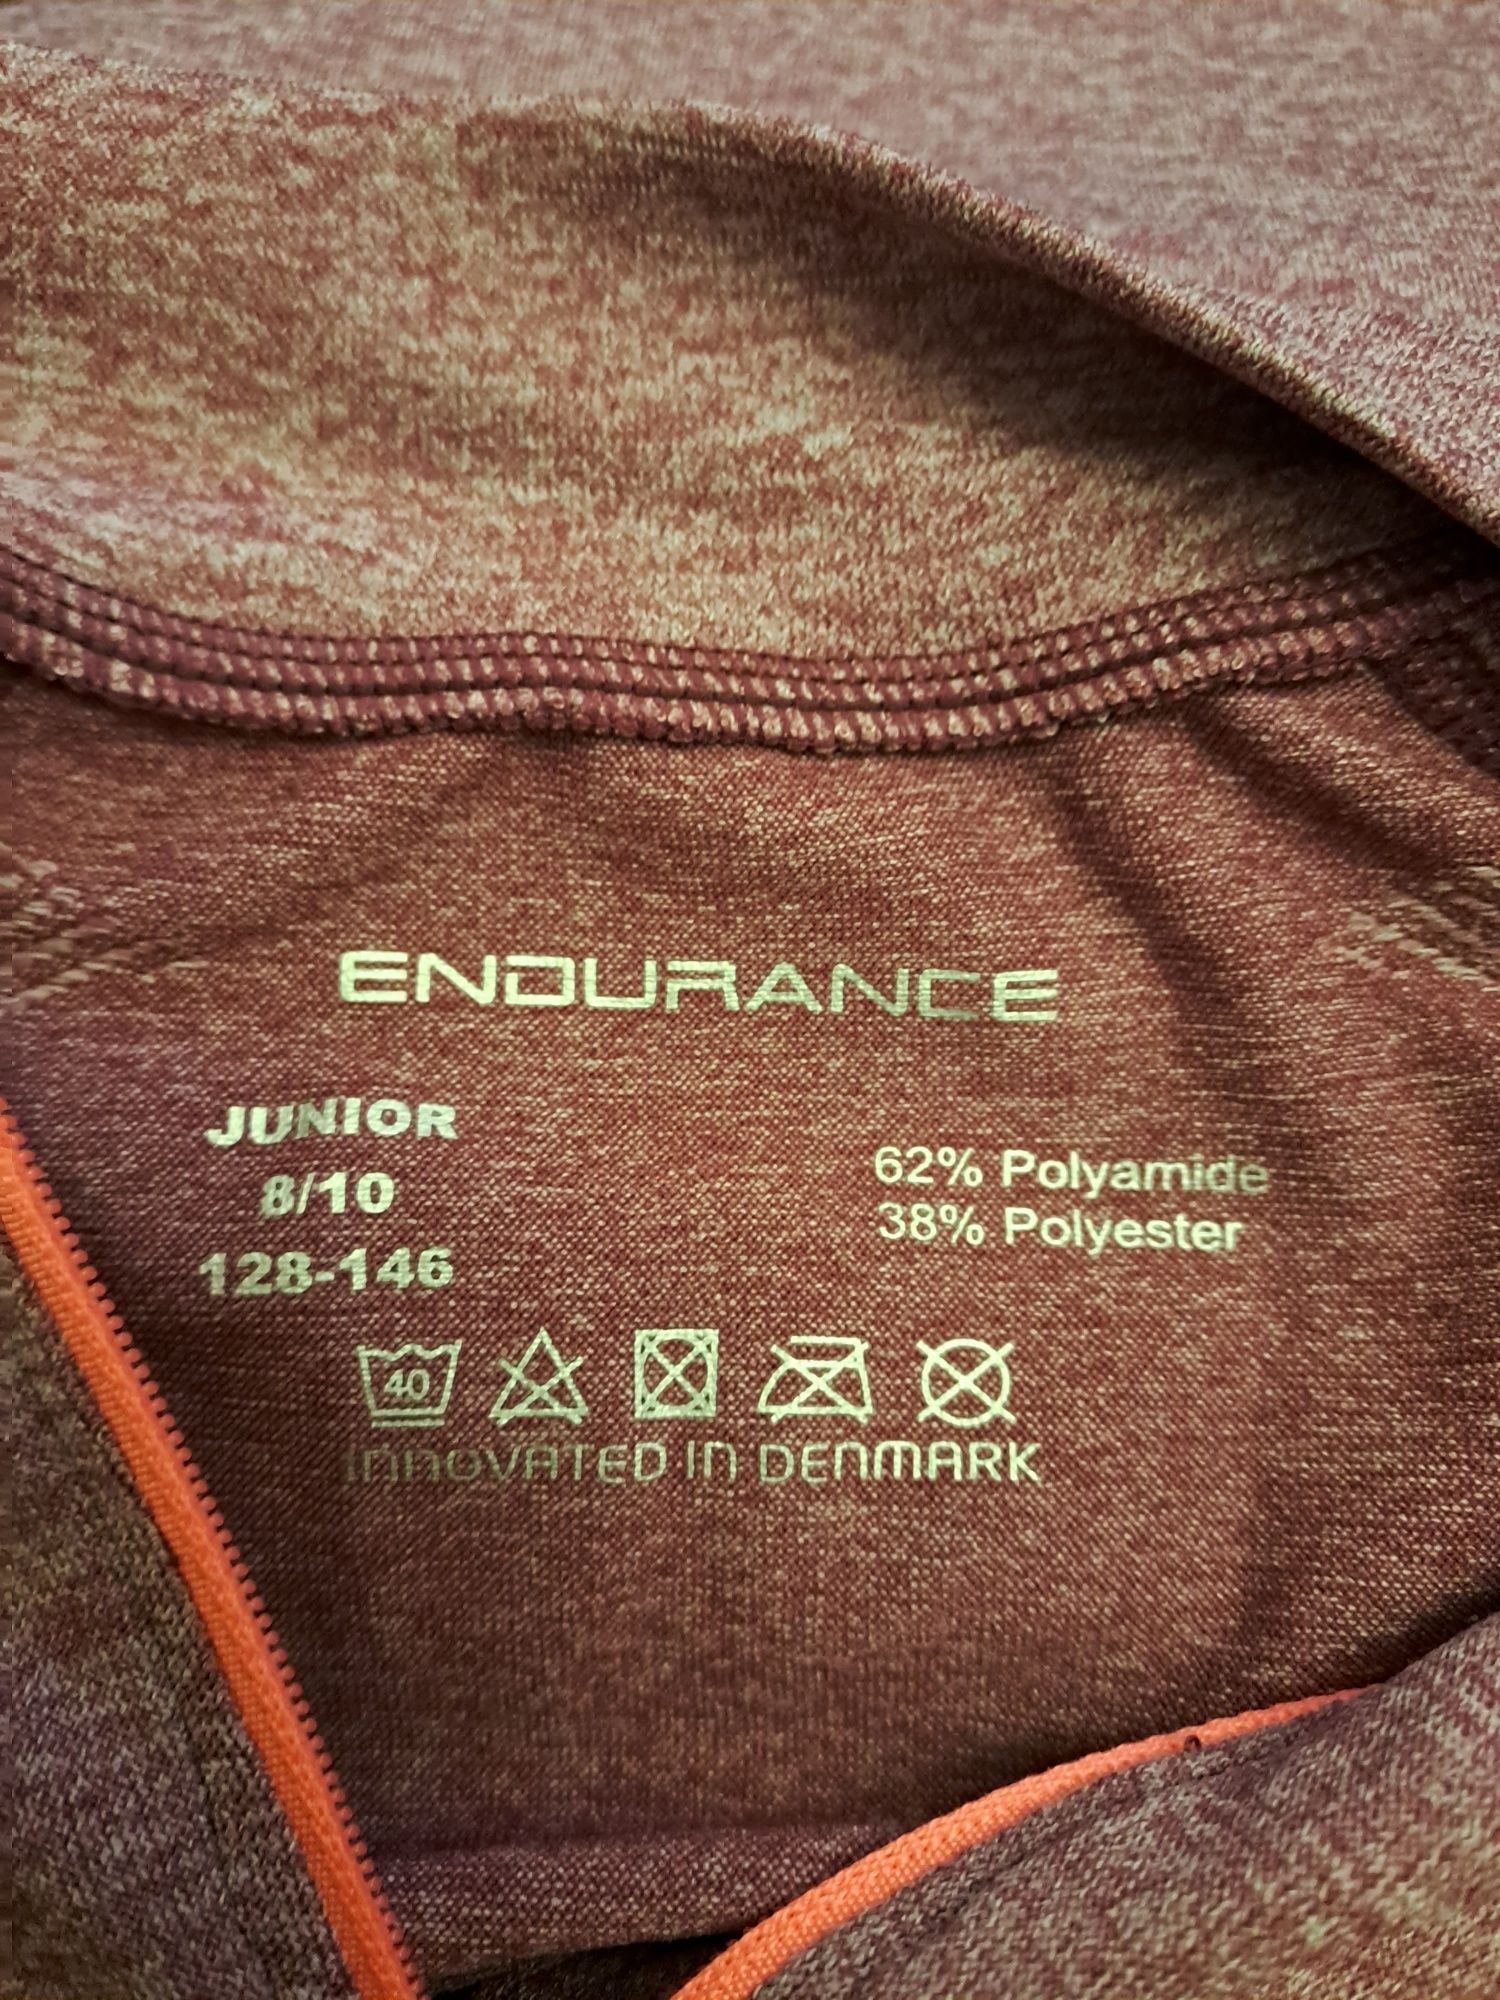 Bluzka termiczna Endurance, rozmiar 128-146, dziewczęca